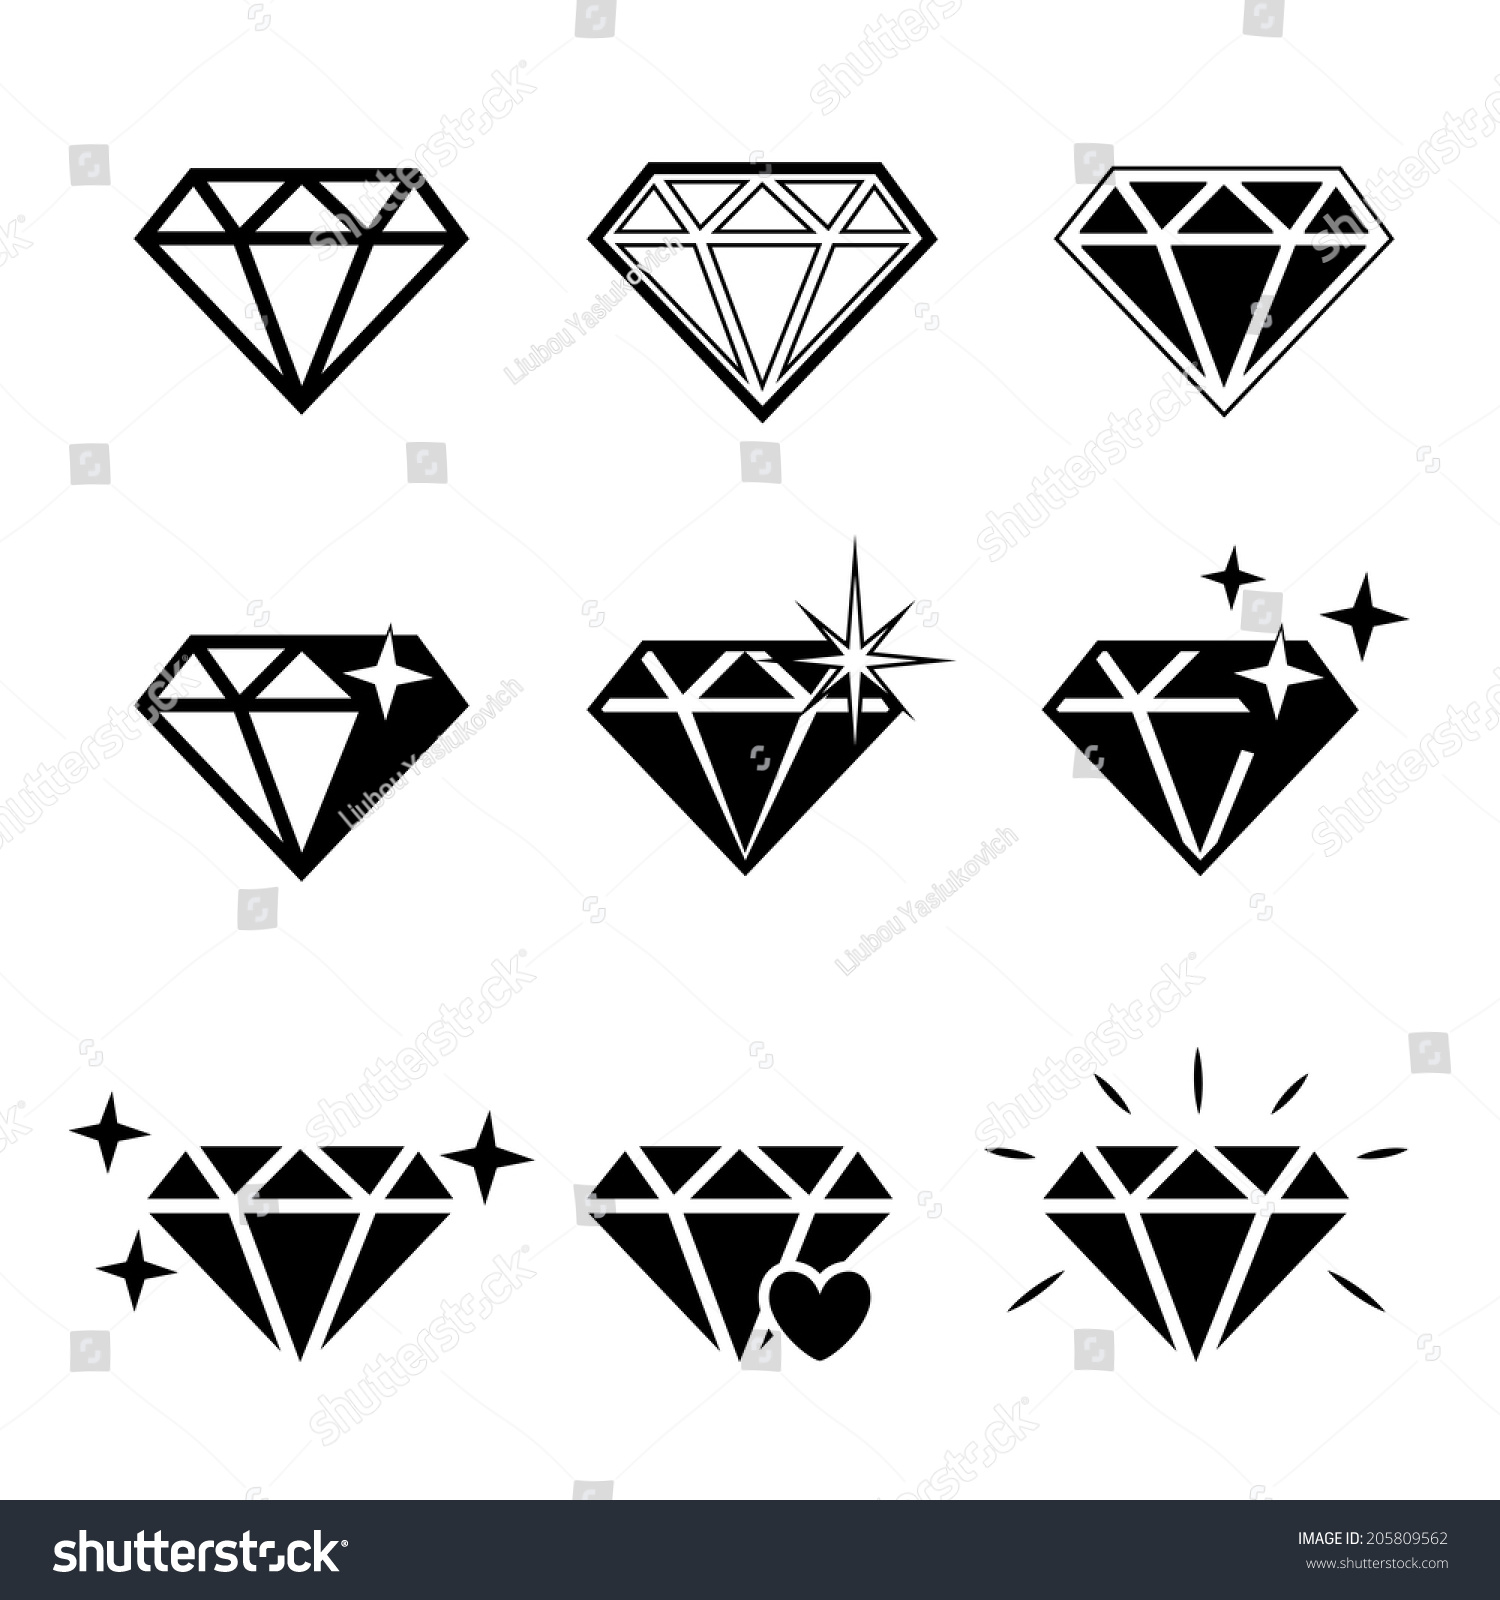 Diamond Vector Icons Set On White Stock Vector 205809562 - Shutterstock